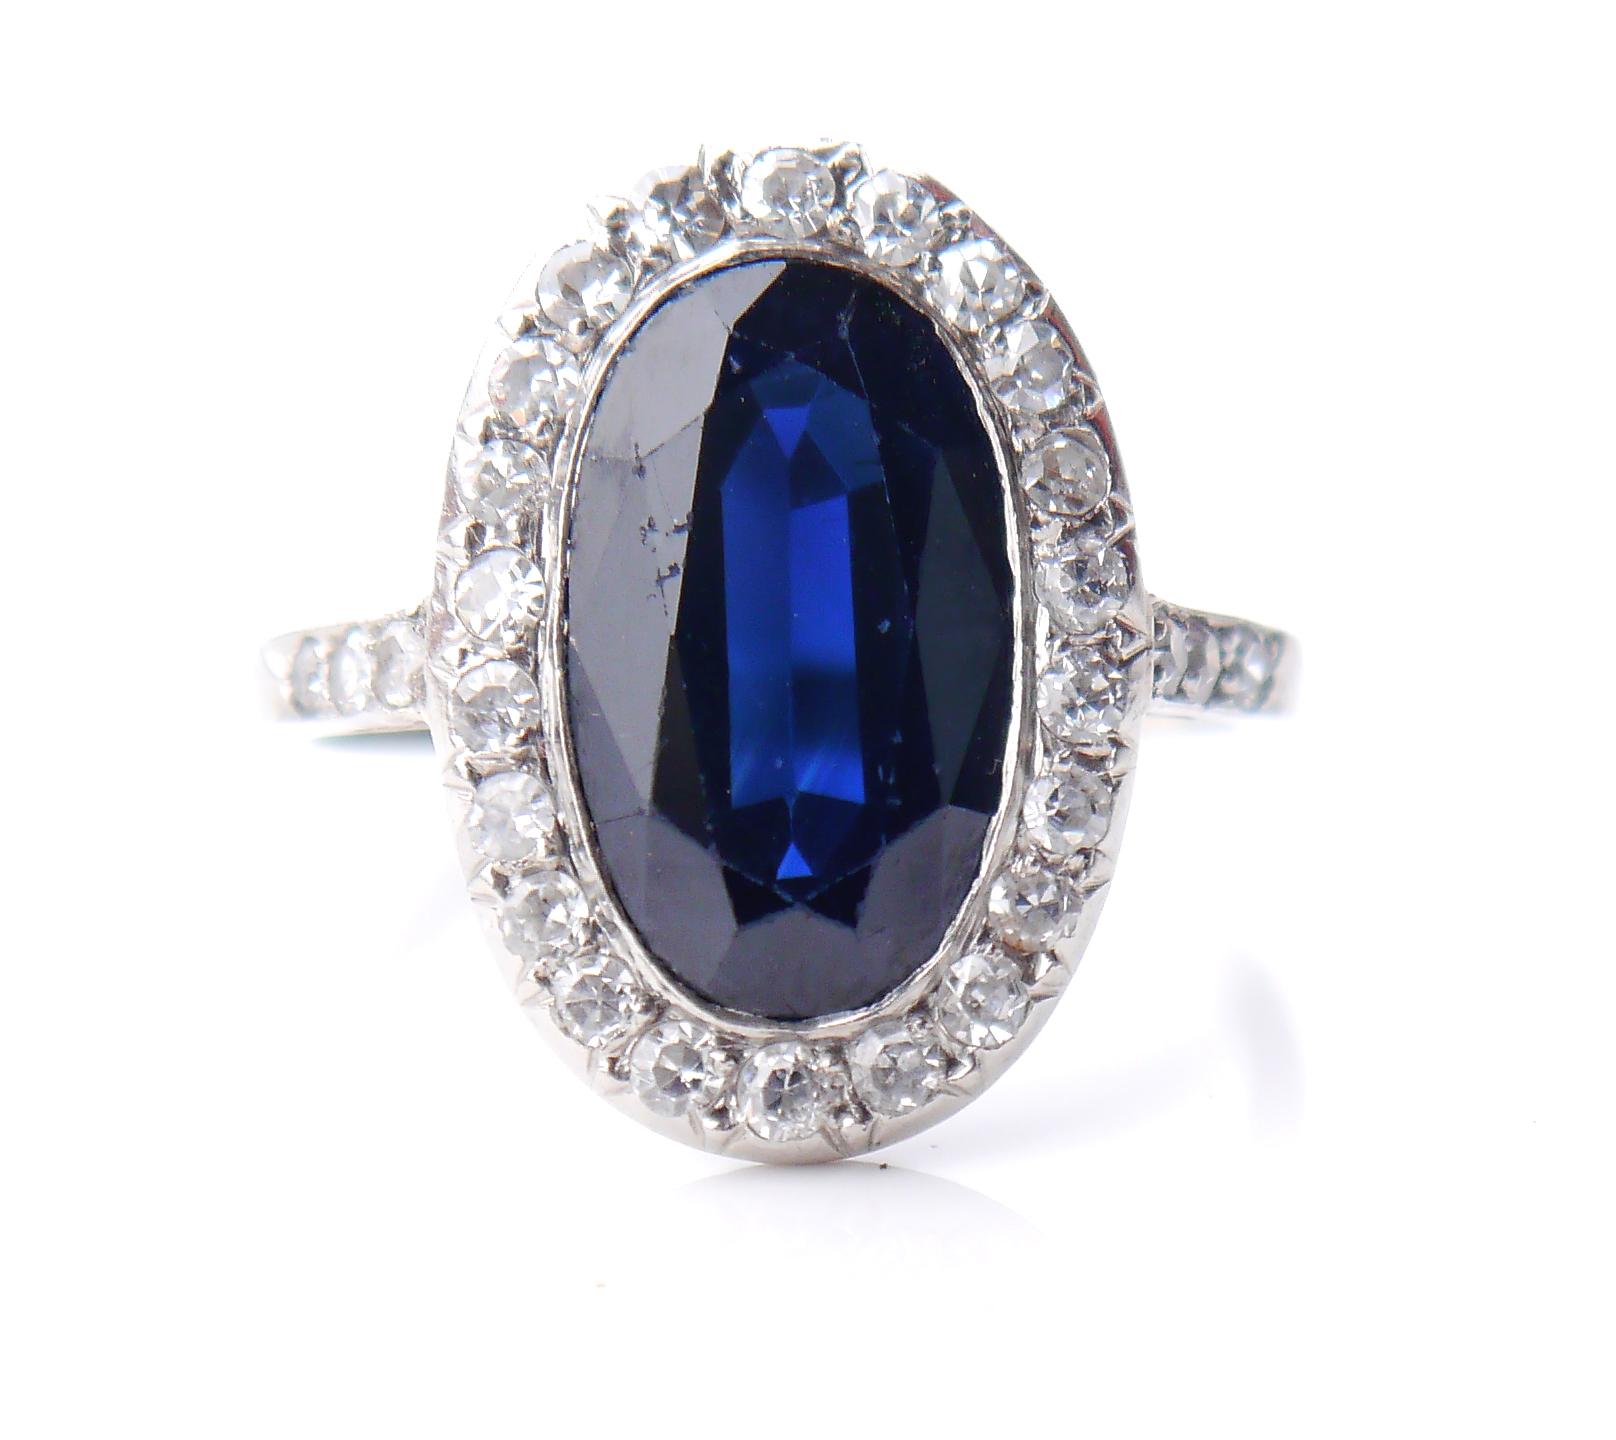 
Schöne Platin, blauer Saphir + Diamanten Halo Flower Ring aus 1920-1930s. Alle Metallteile dieses Rings sind aus massivem Platin gefertigt. 
Die Krone misst 17 mm x 12 mm x 5 mm. 
Der oval geschliffene natürliche blaue Saphir in einem dunkleren